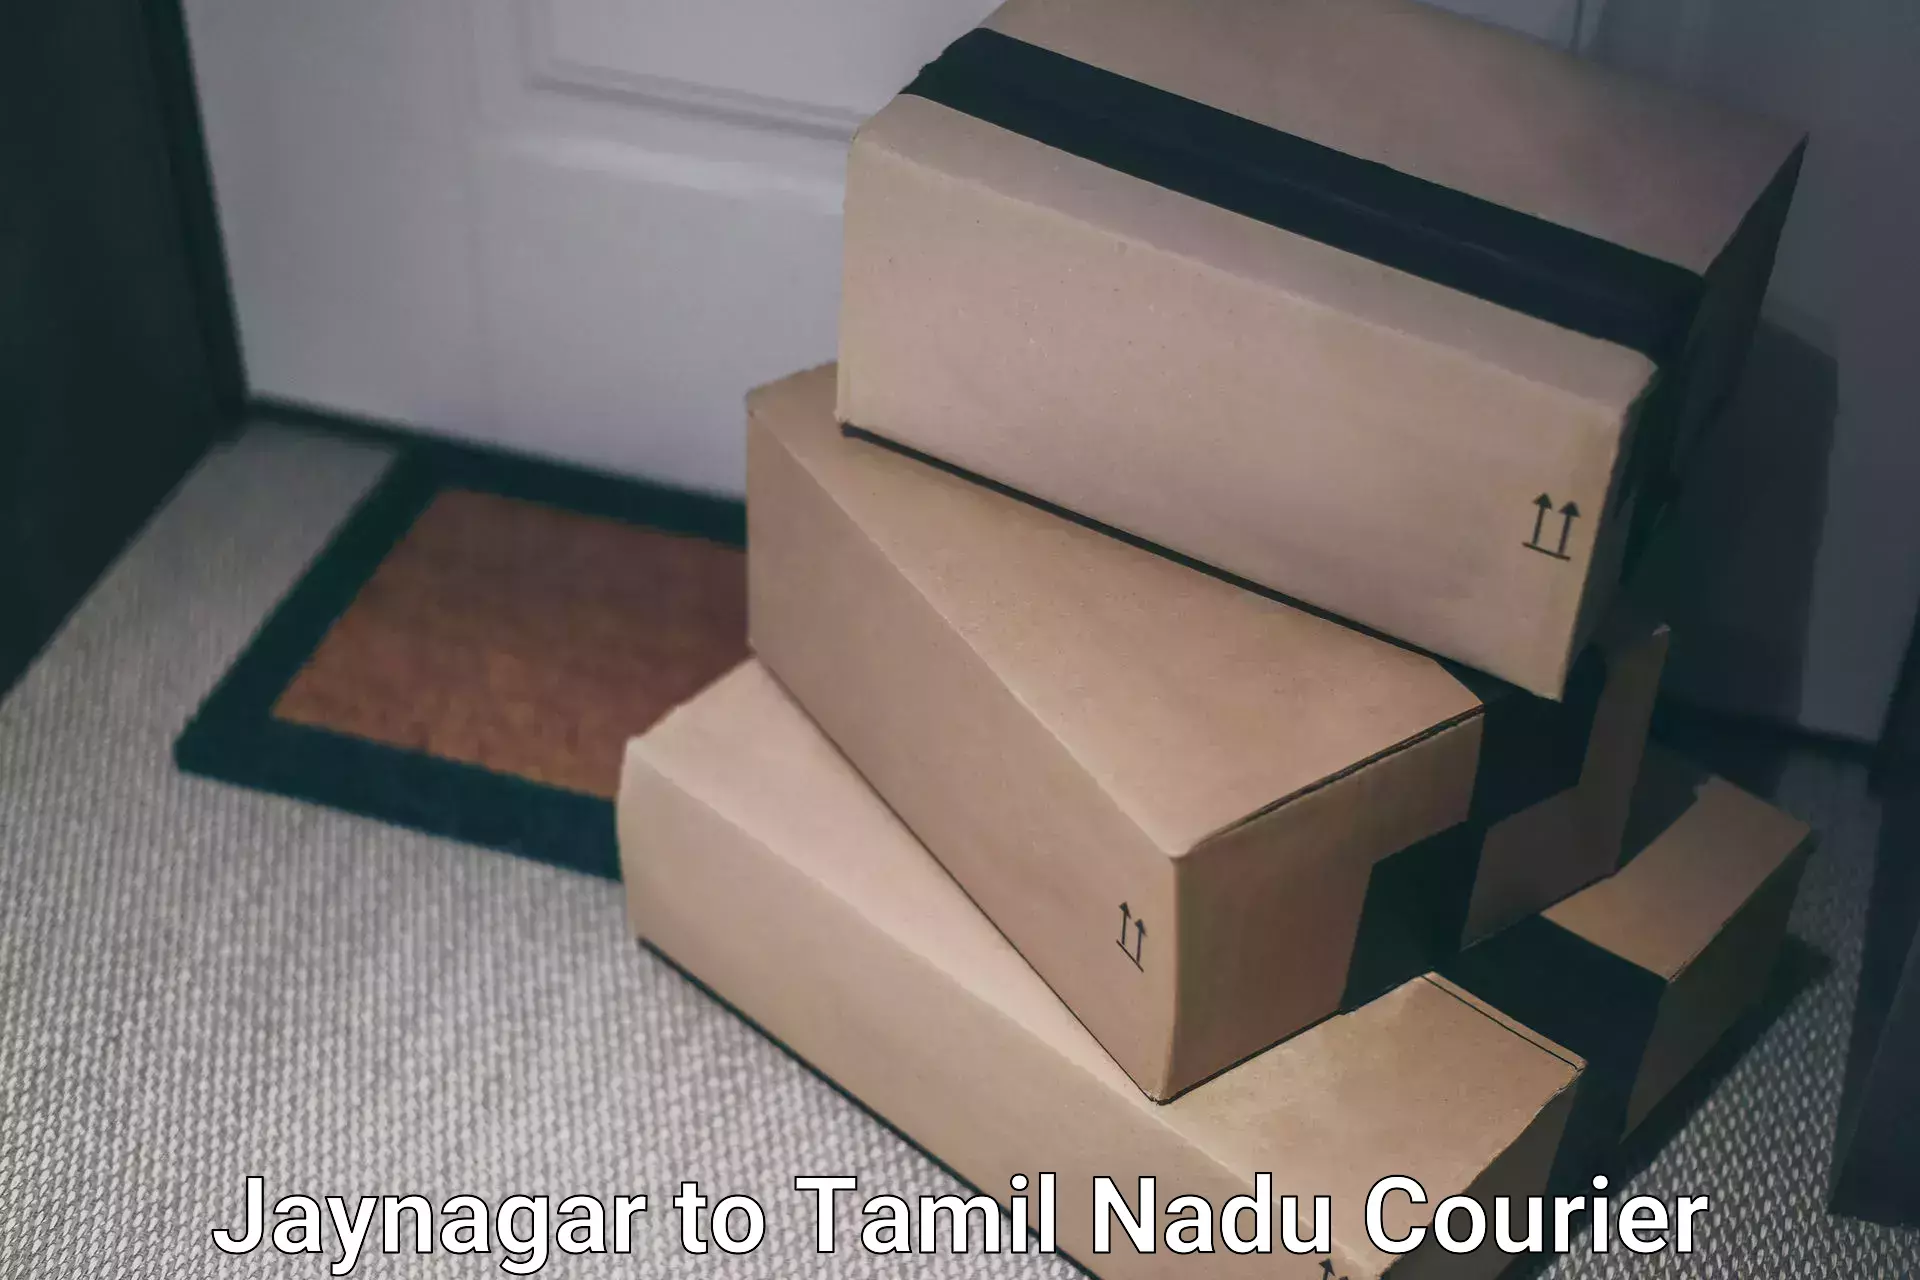 Smart shipping technology Jaynagar to Paramakudi